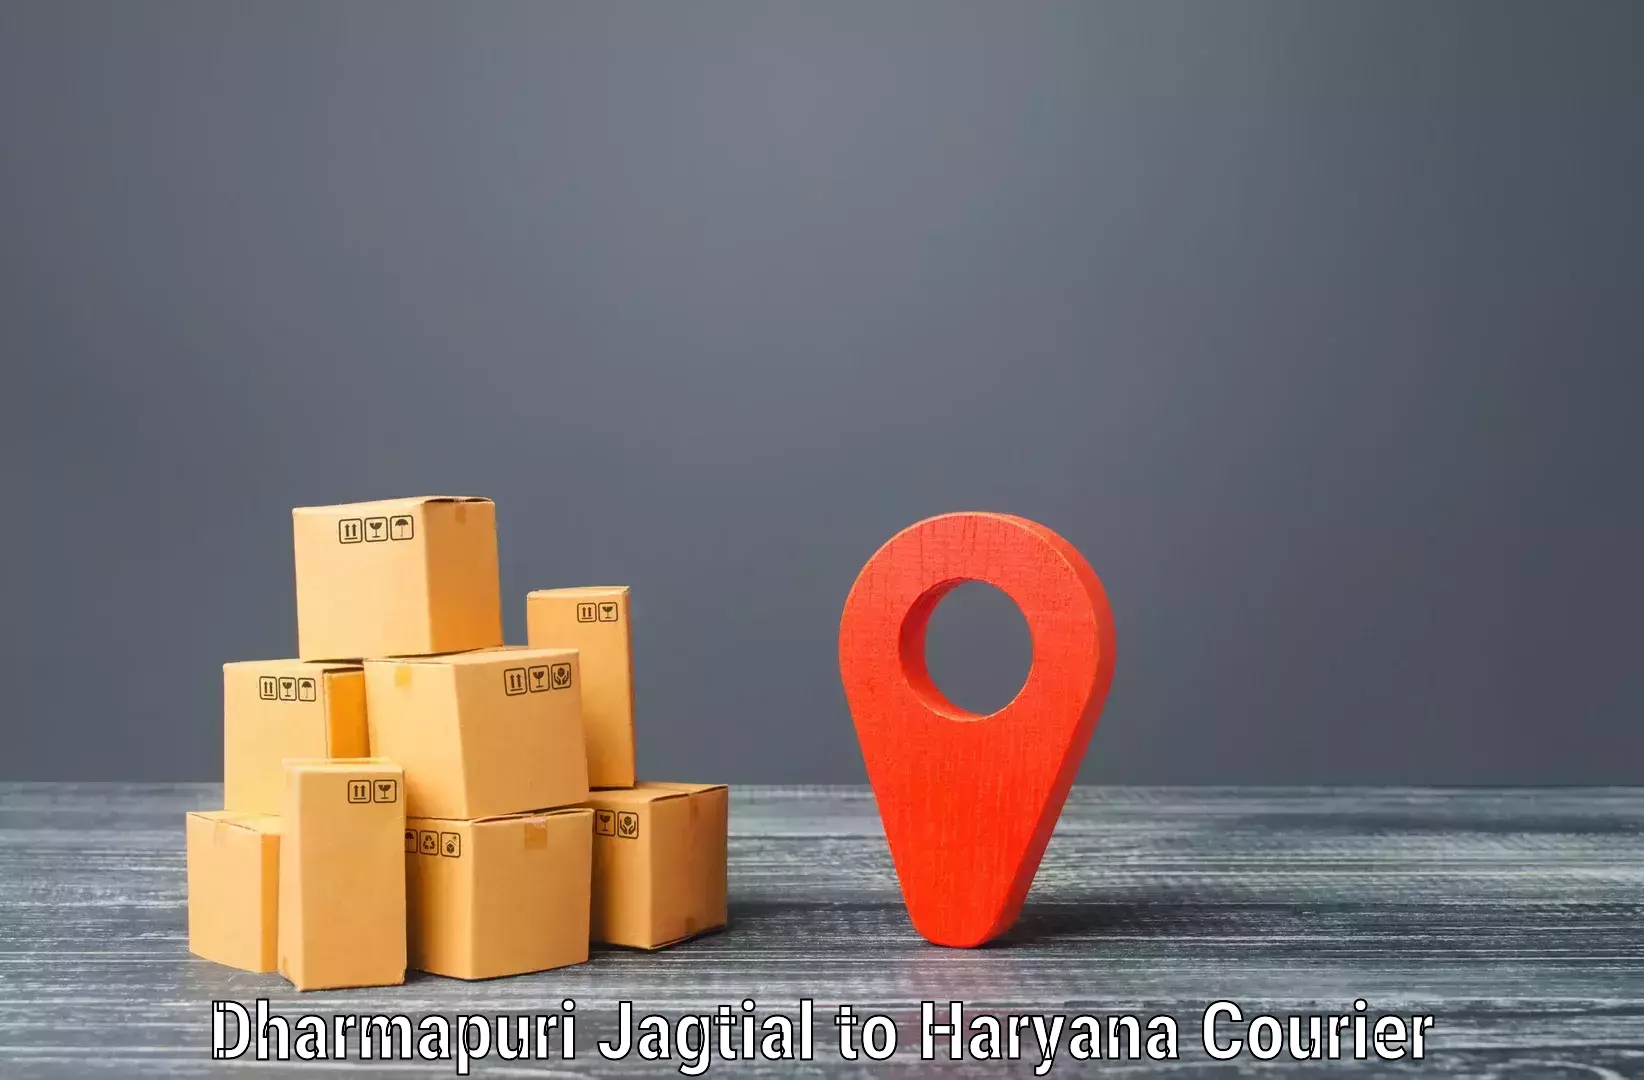 High-speed parcel service Dharmapuri Jagtial to Kalanwali